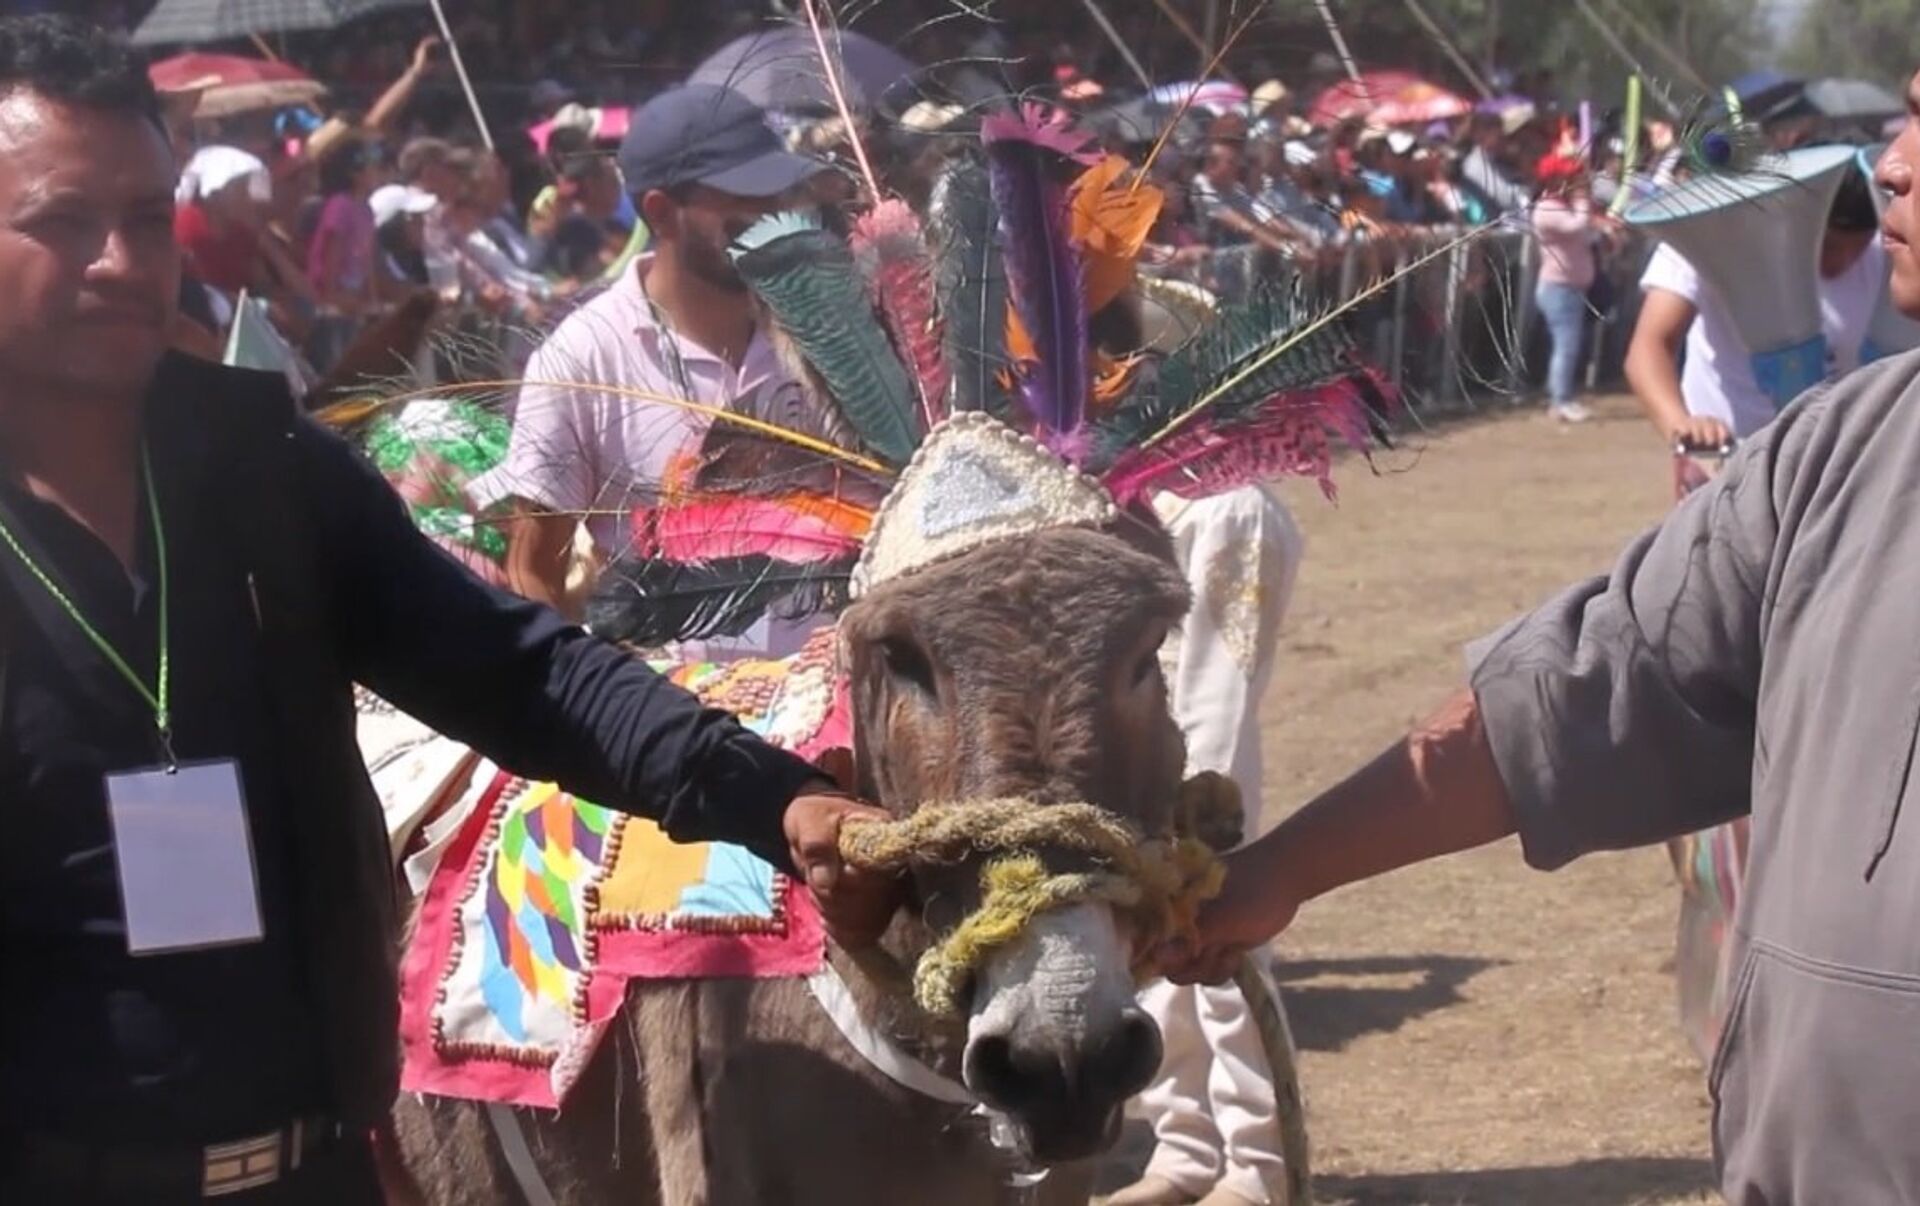 Гонки на ослах и конкурс костюмов - как прошел ослиный фестиваль в Мексике.